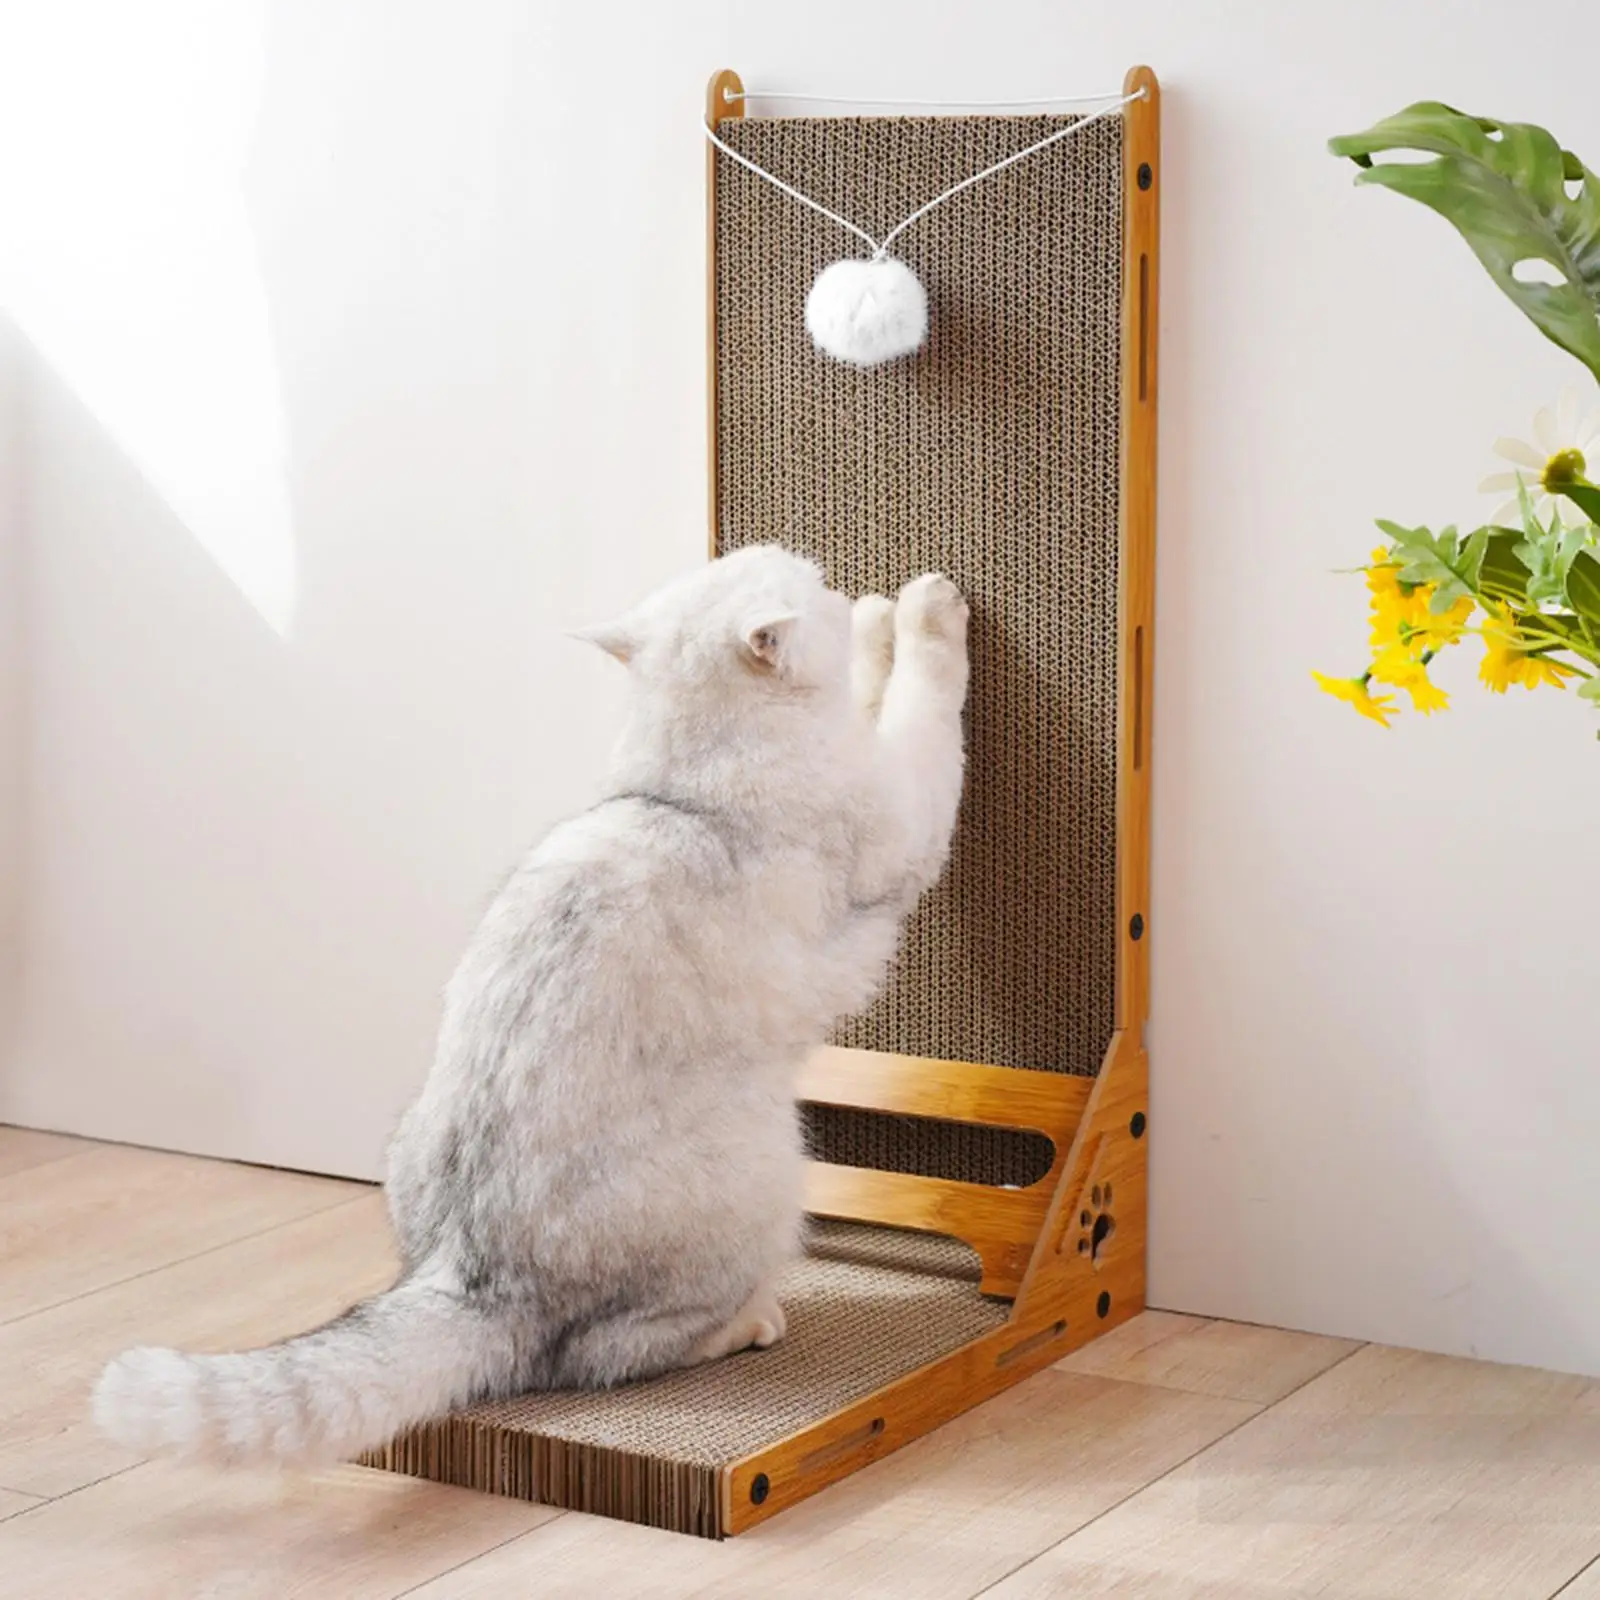 Vertical Cat Scratcher Corrugated Paper with Ball, Scratching Posts, Furniture